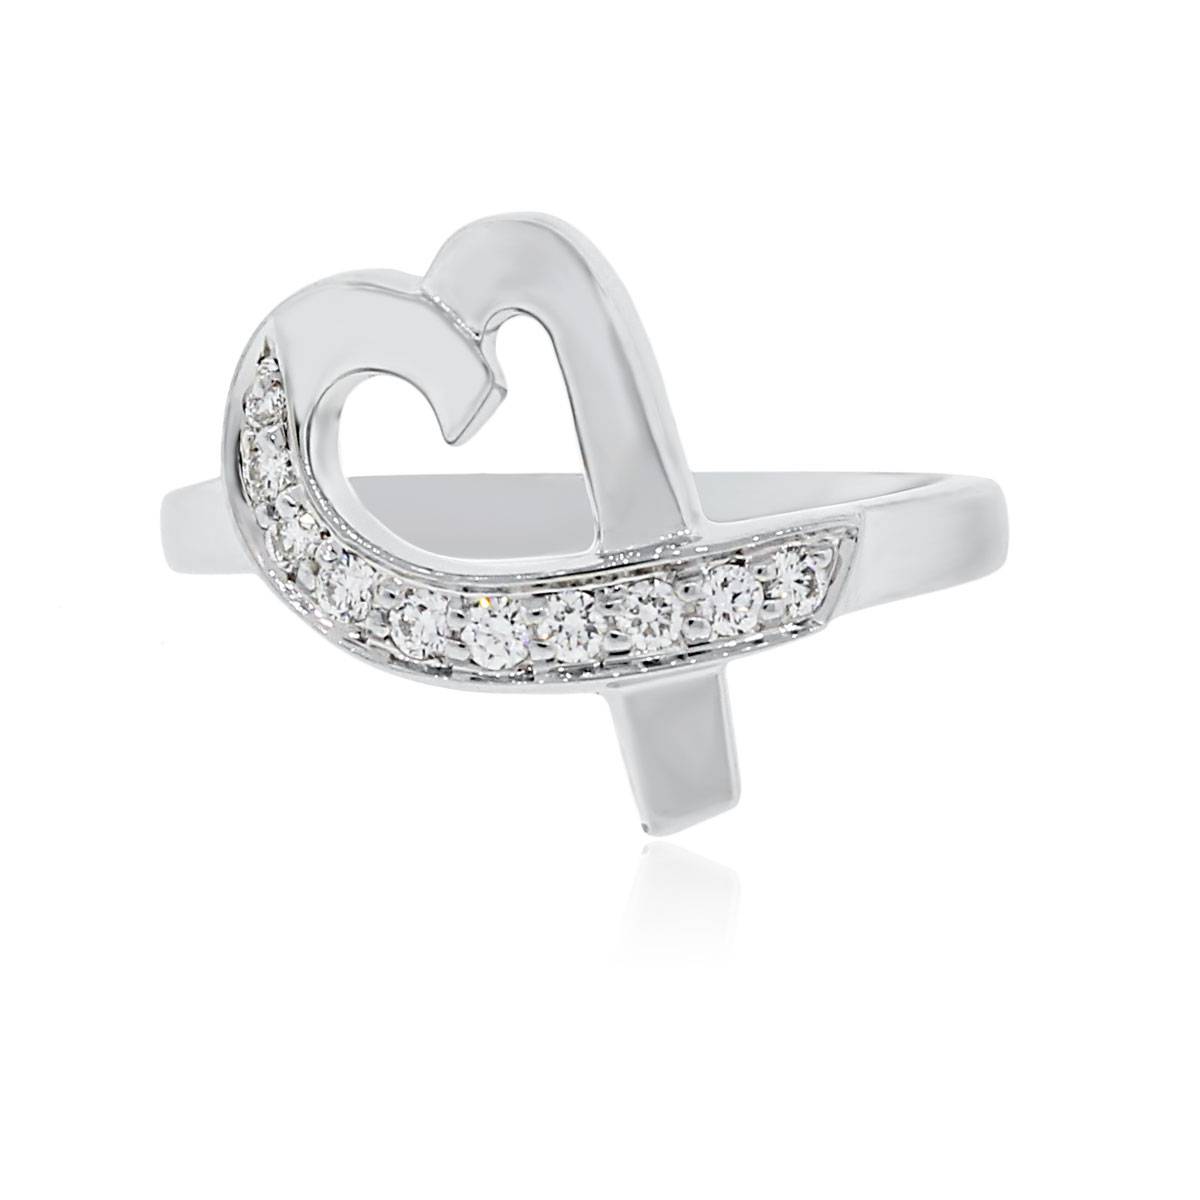 Paloma Picasso Tiffany diamond ring